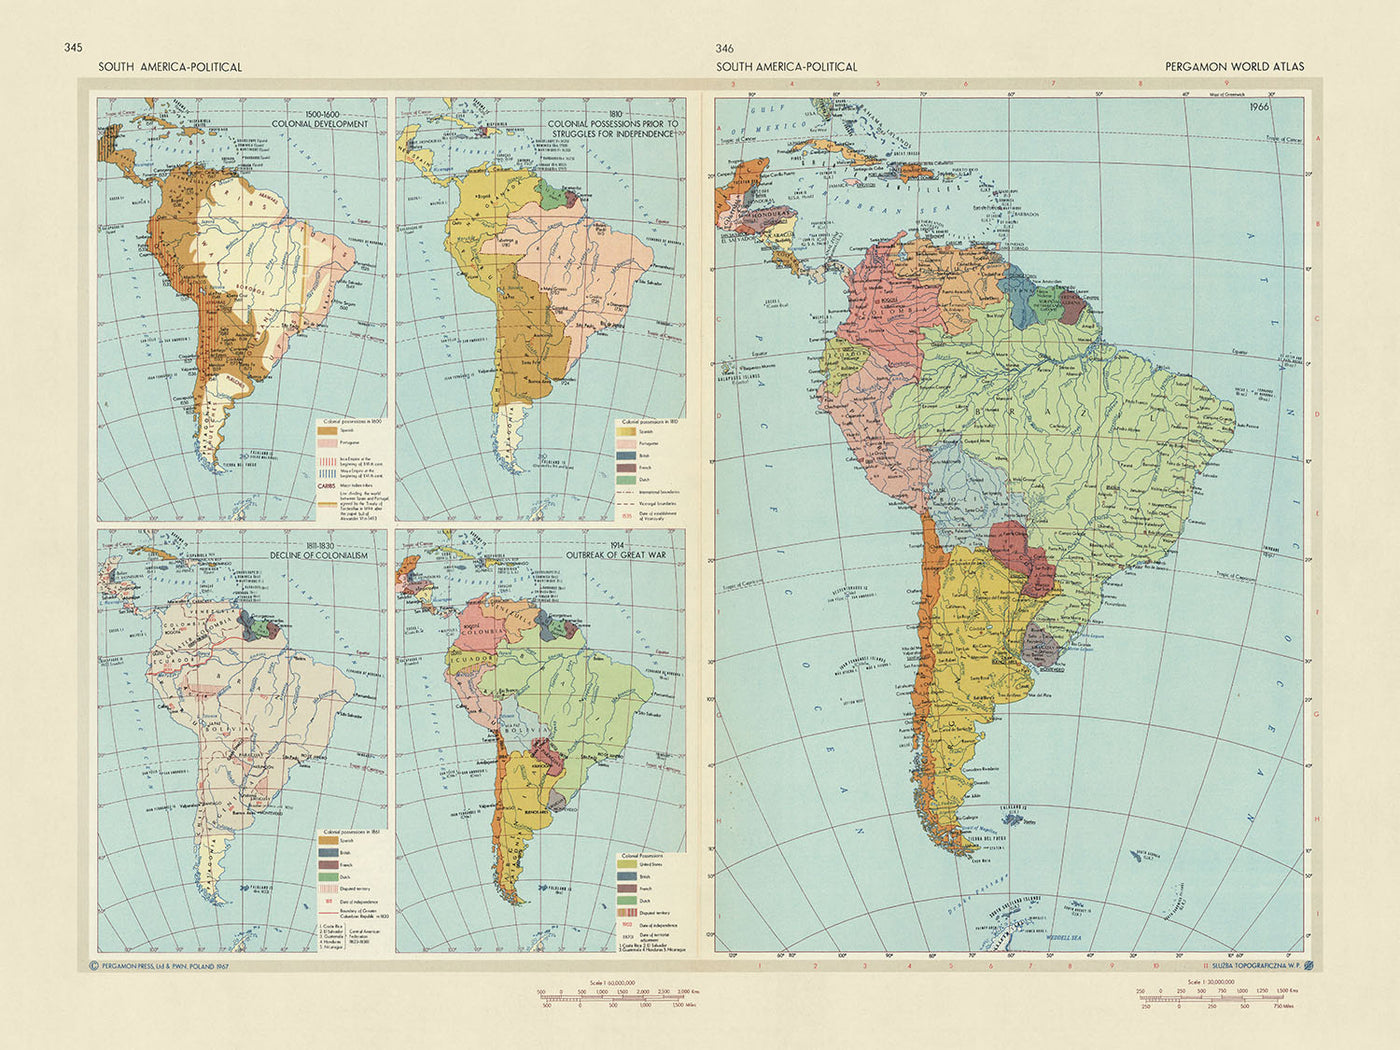 Alte Infografik-Karte von Südamerika politisch und historisch, 1967: Koloniale Entwicklung, Unabhängigkeitskämpfe und Infografiken